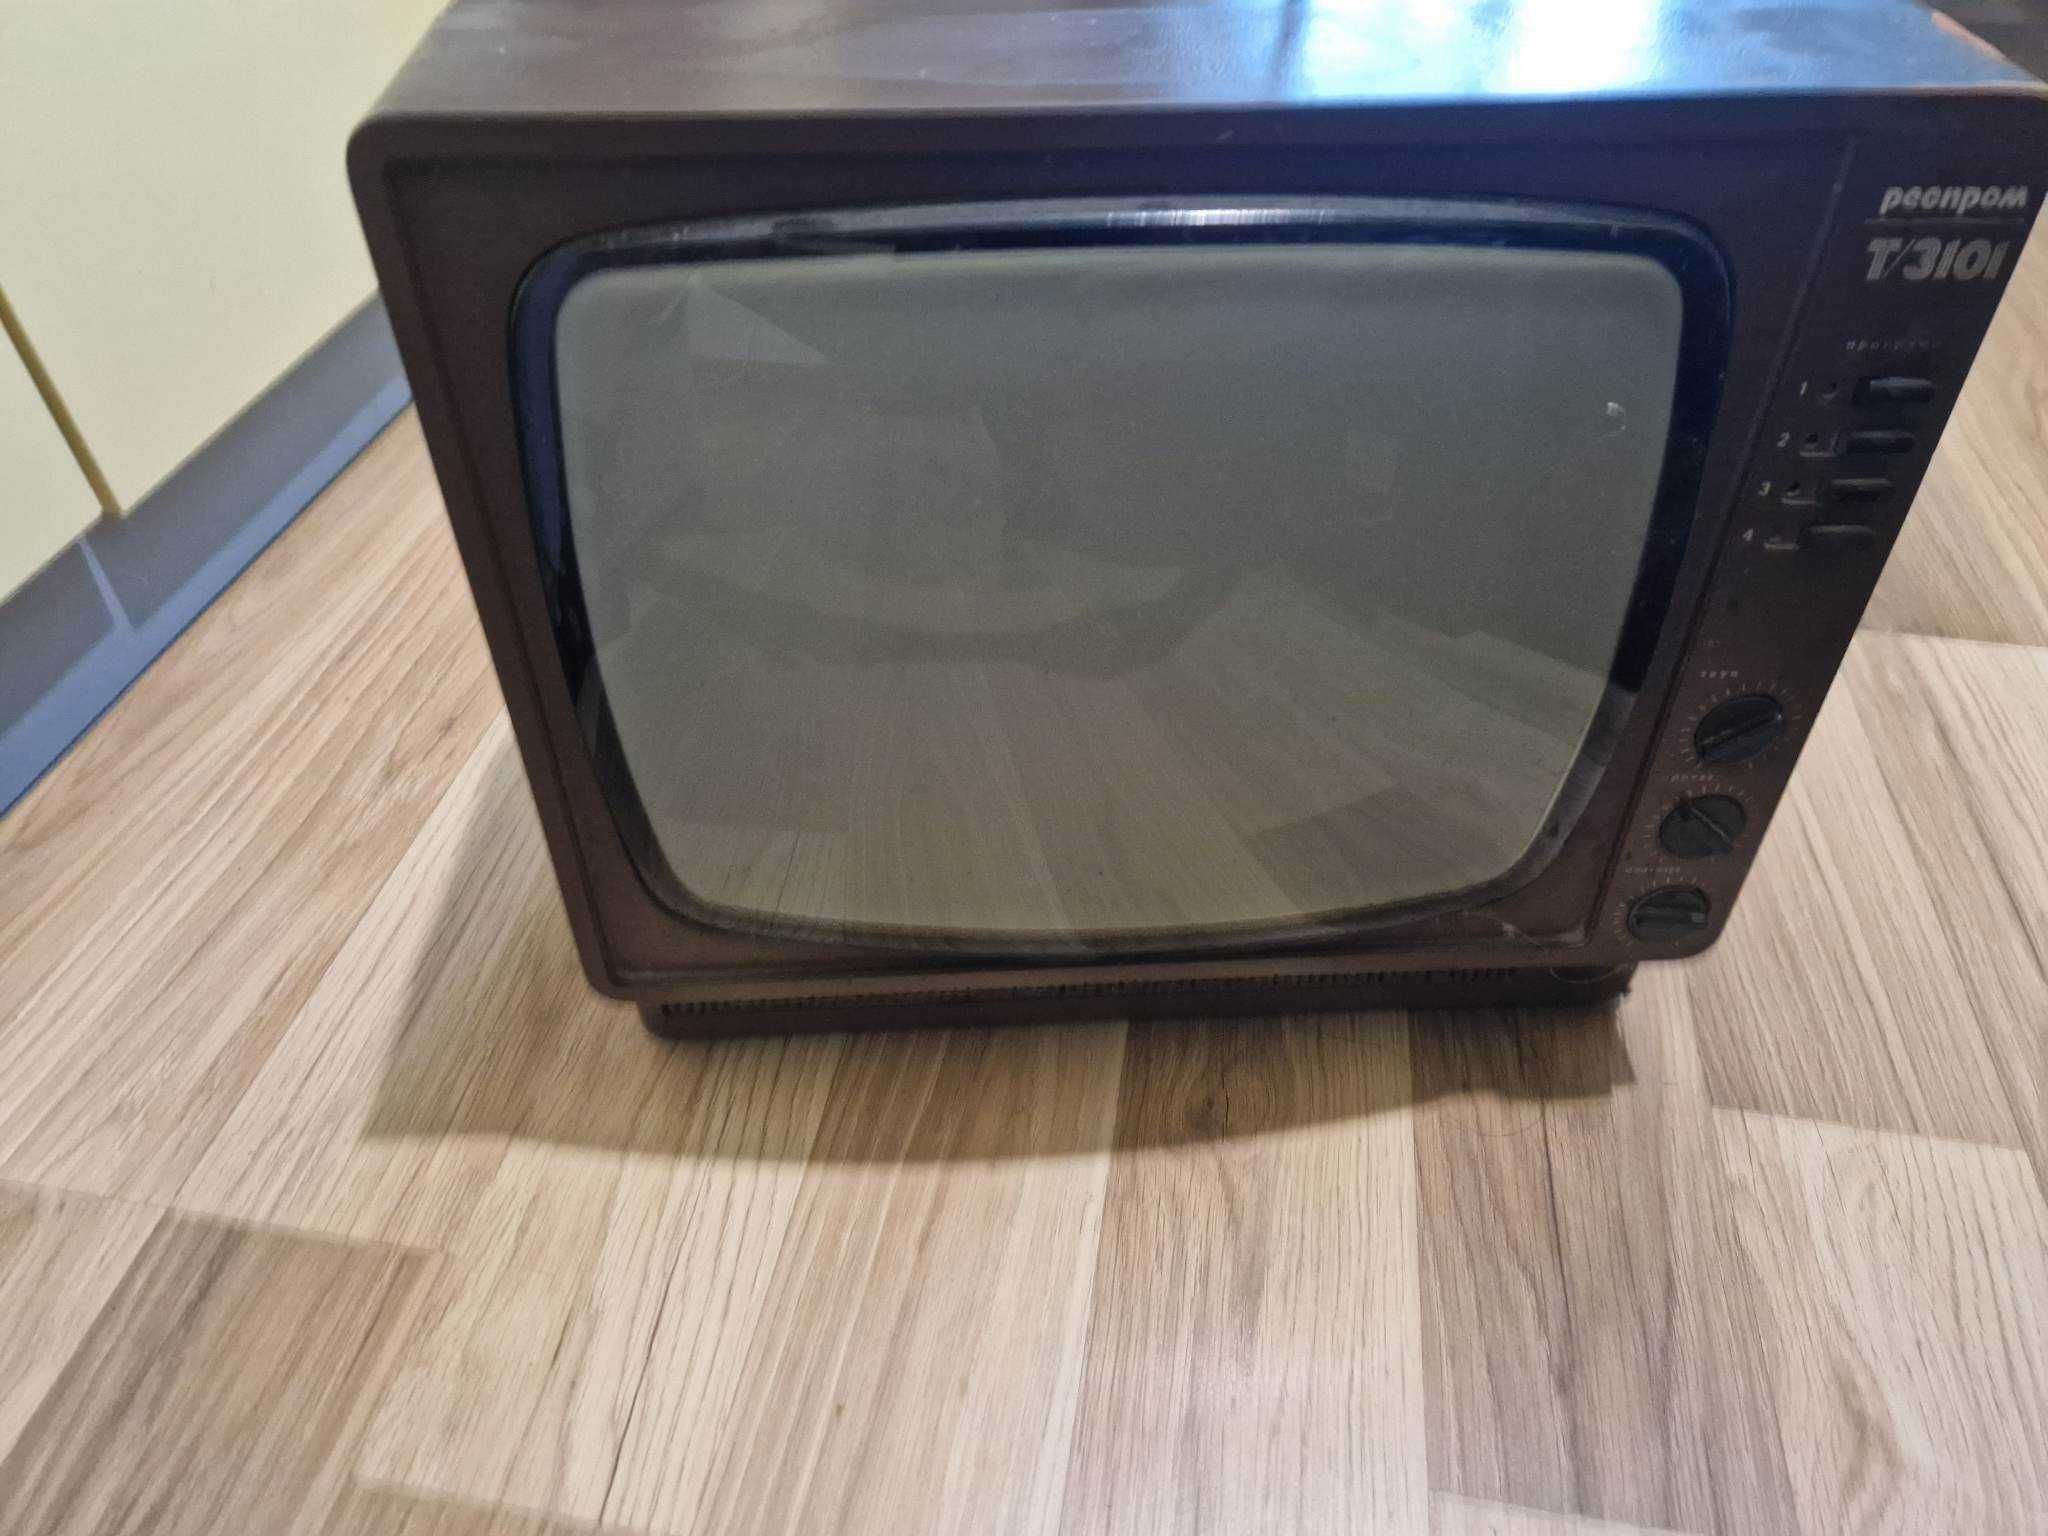 ретро телевизор респротм Т3101